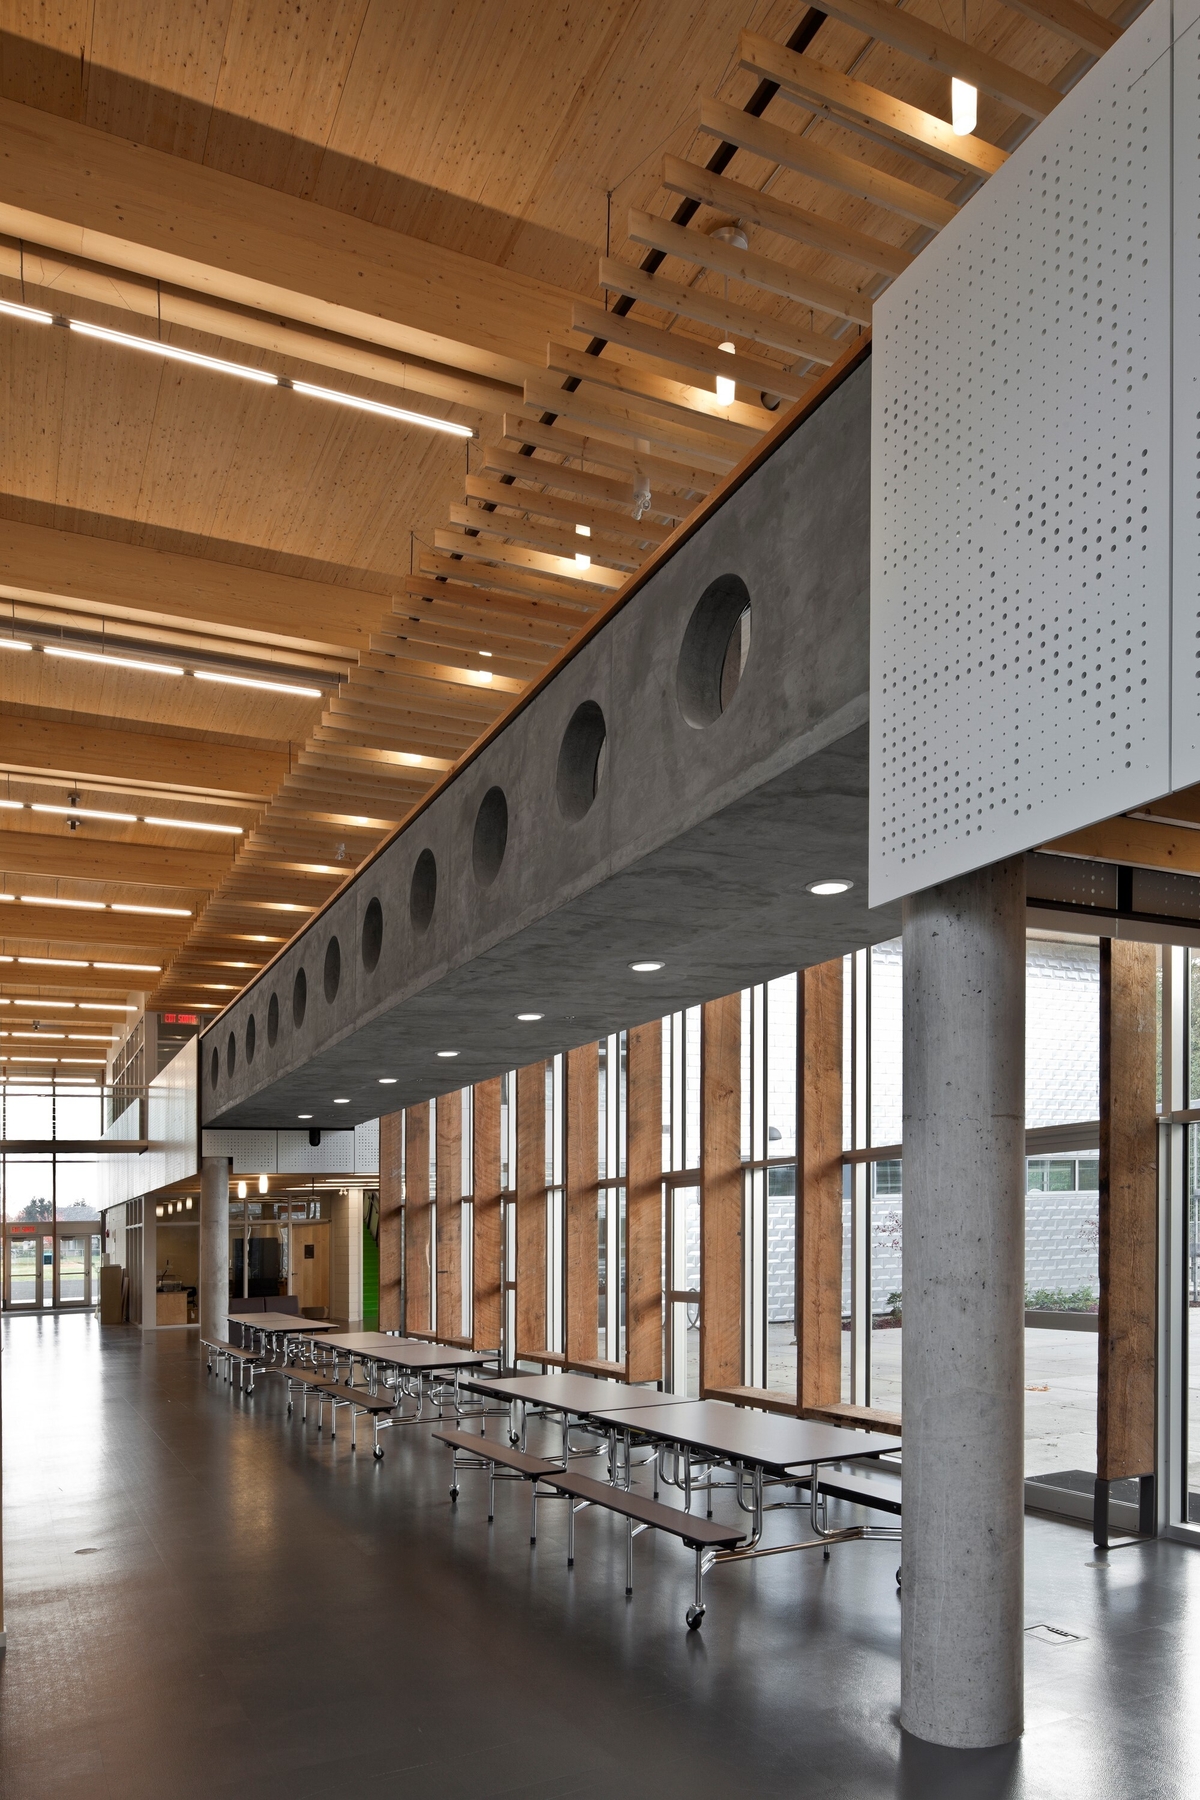 低层建筑École au - ceau -de-l ' île小学两层主入口大厅和办公室的日间景观，展示了暴露的道格拉斯冷杉木材，胶合木(胶合木)屋顶梁，2楼混凝土走道和广泛的木材装饰